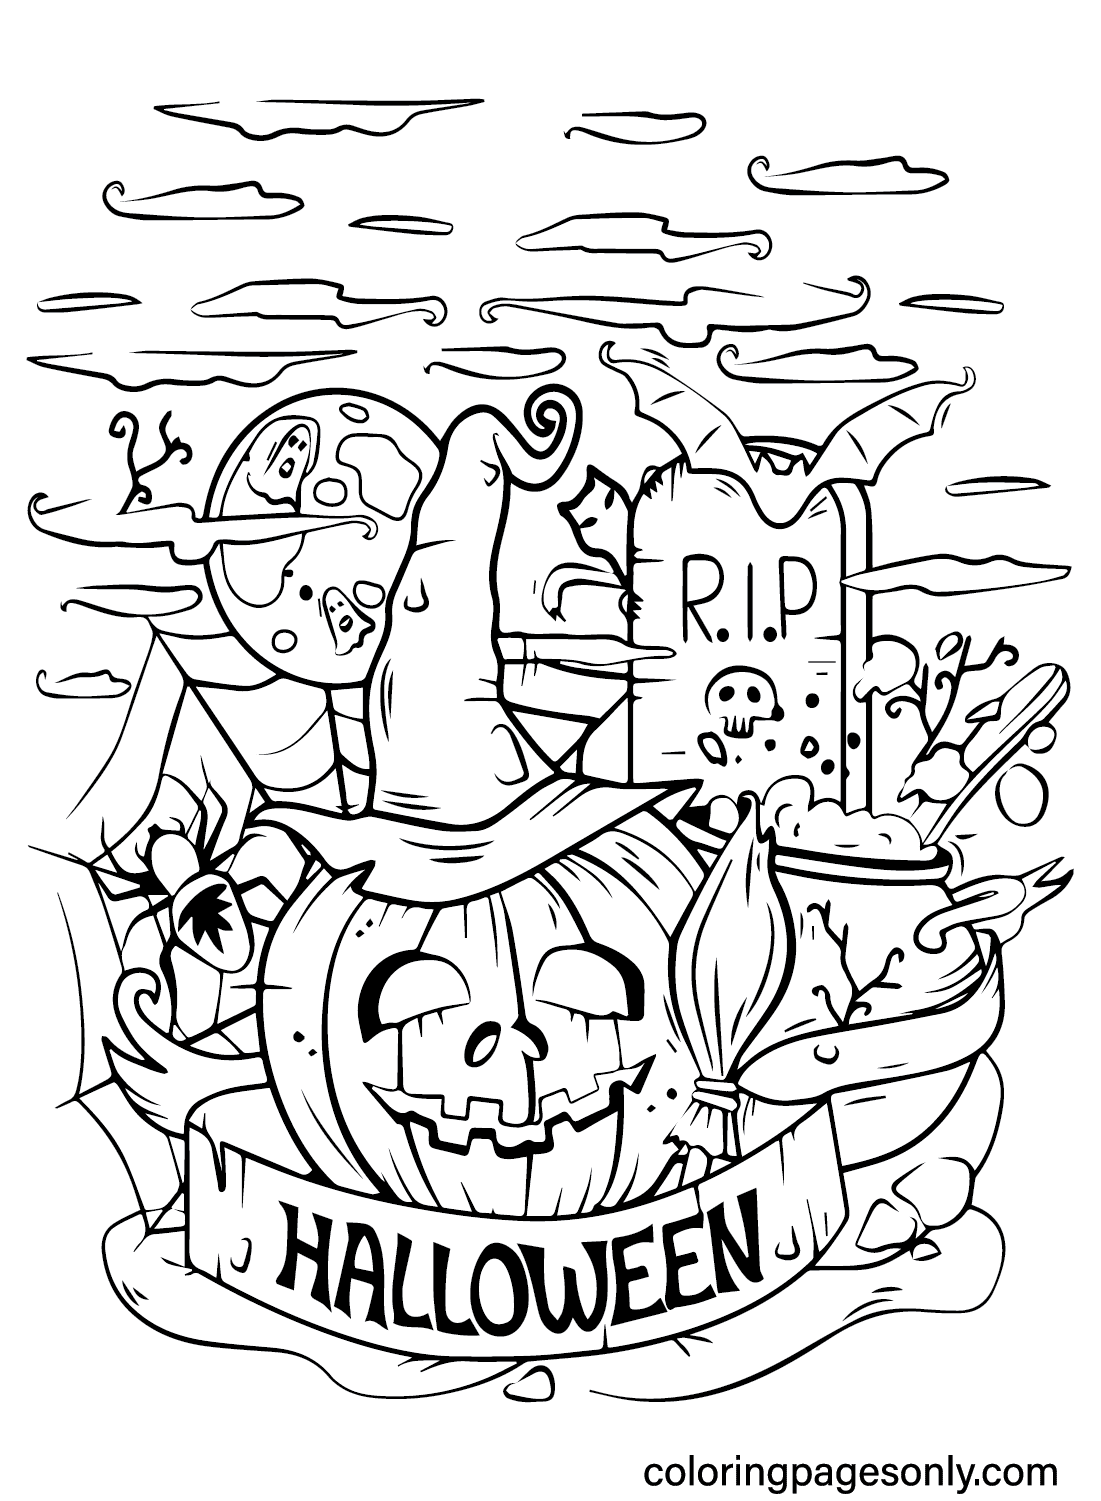 Страшная раскраска Хэллоуин для детей от Spooktacular Halloween